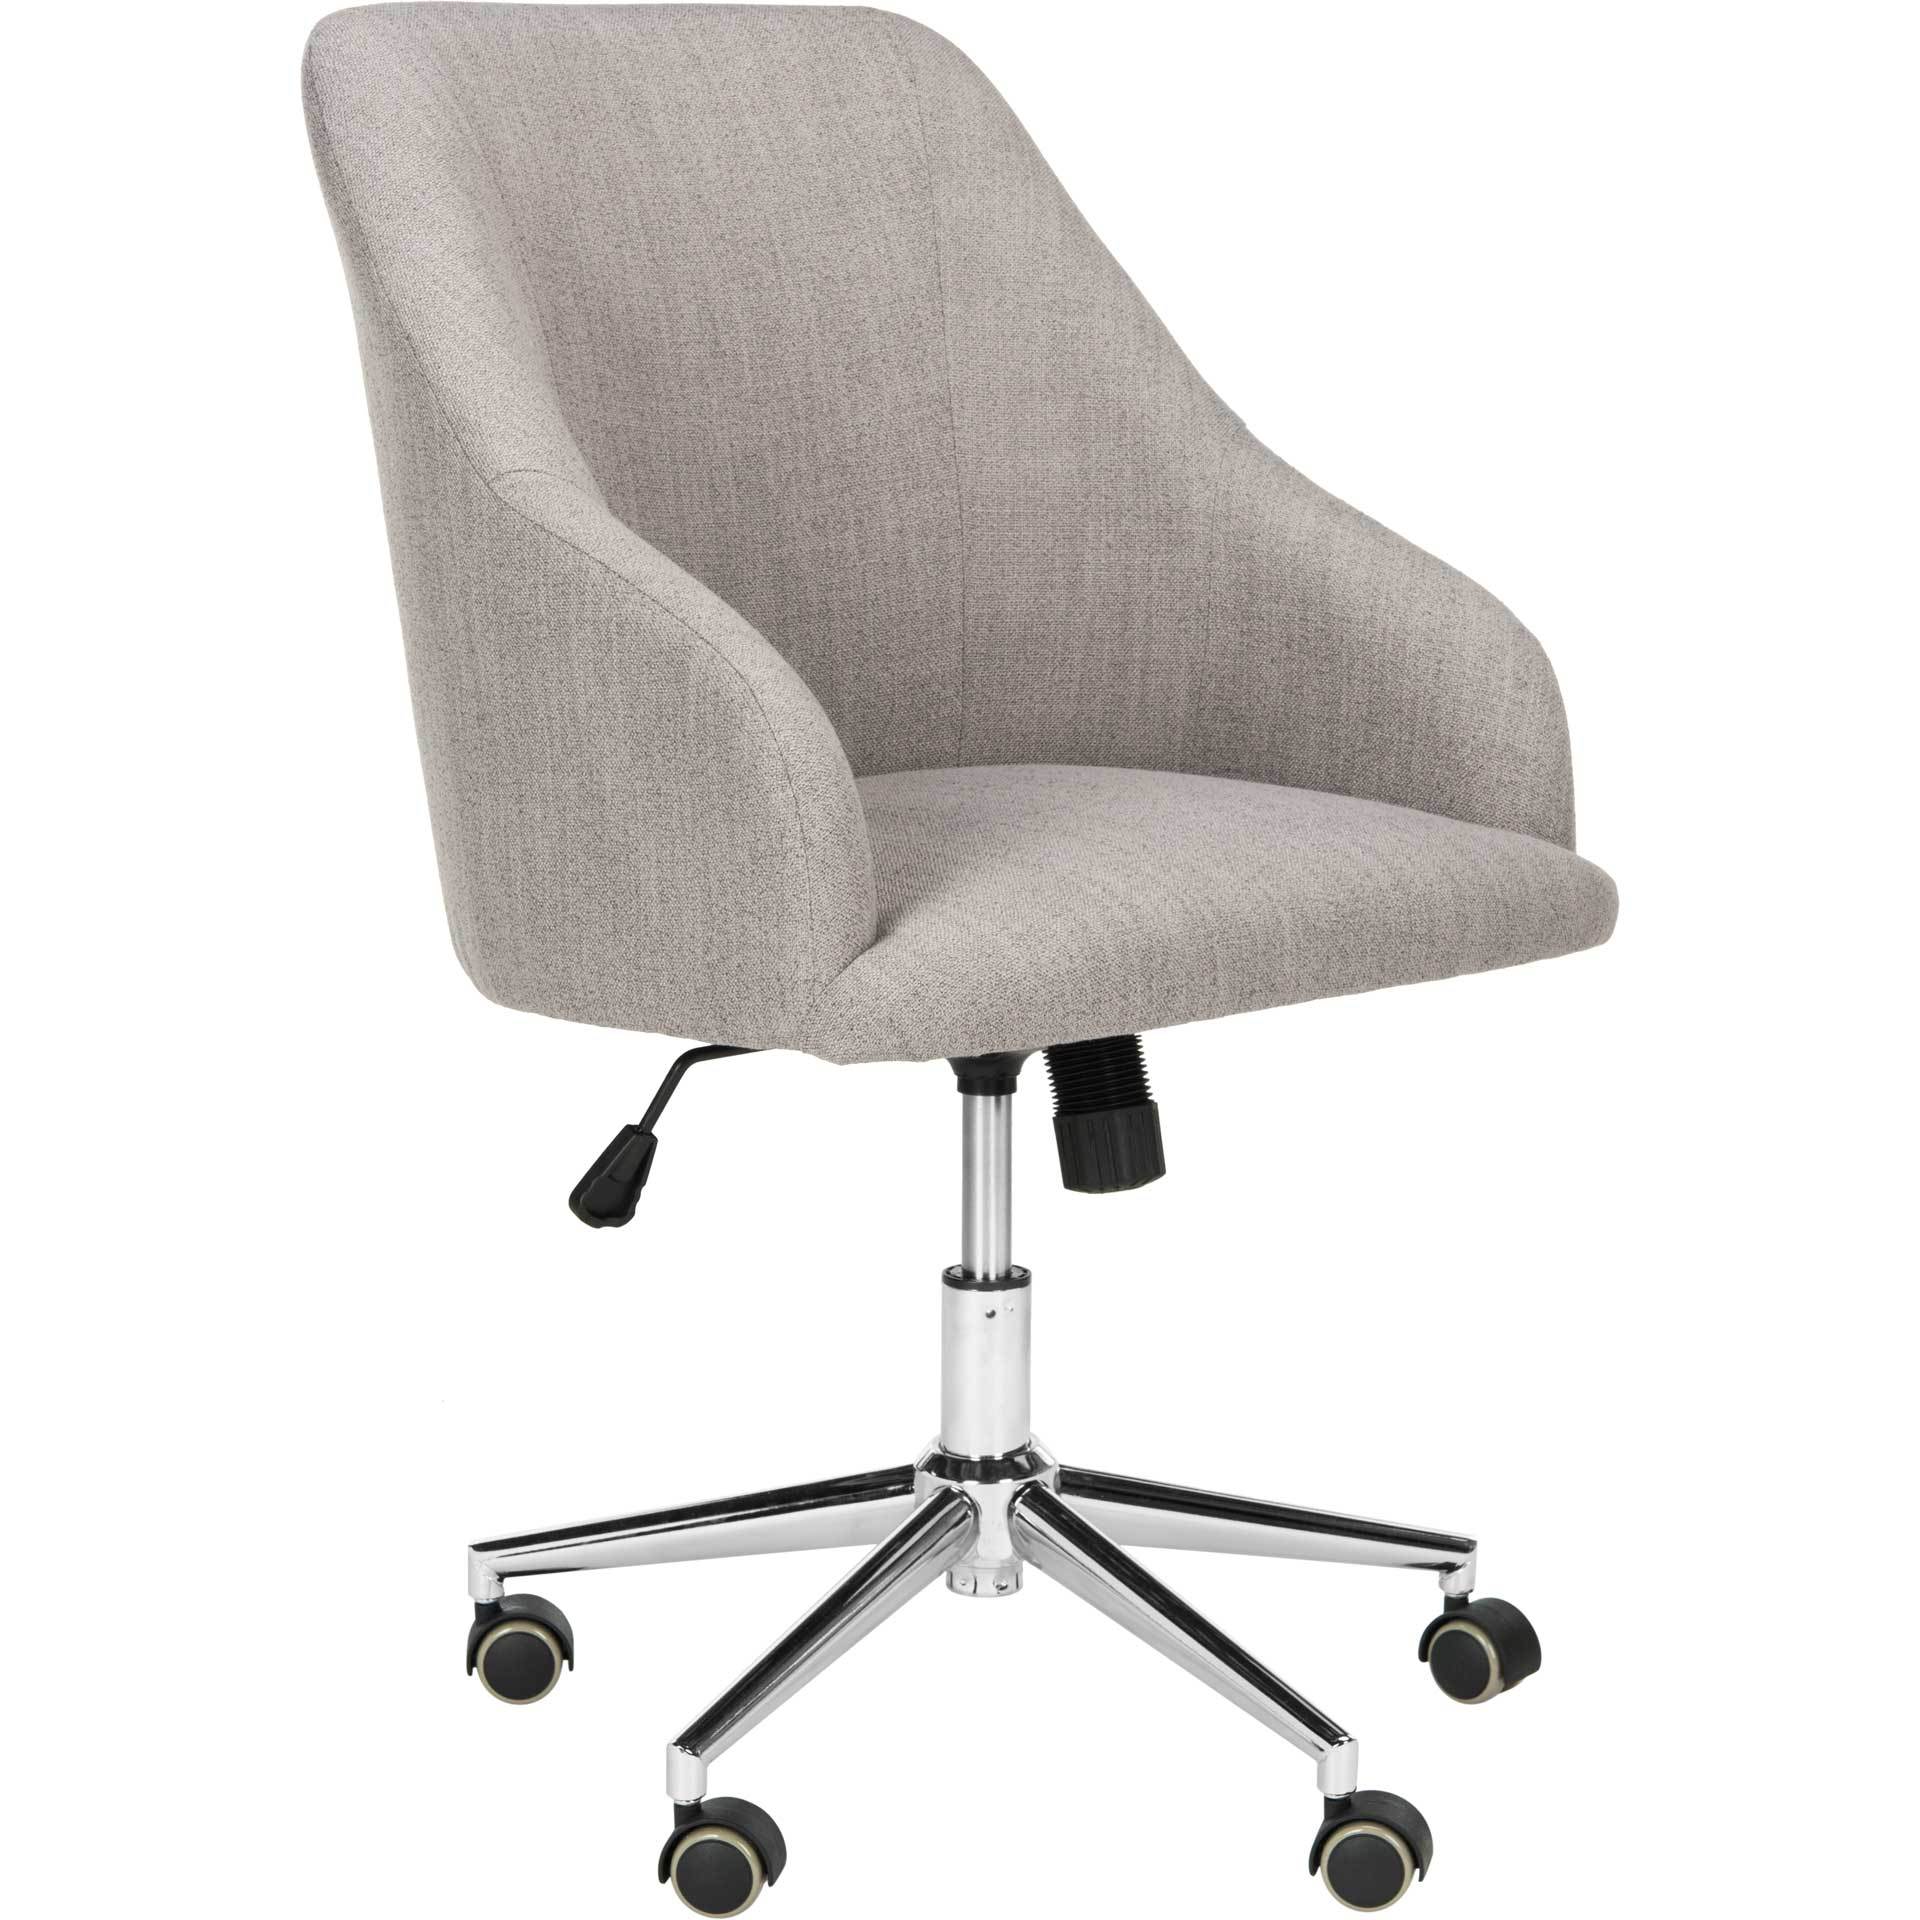 Adele Linen Chrome Leg Swivel Office Chair